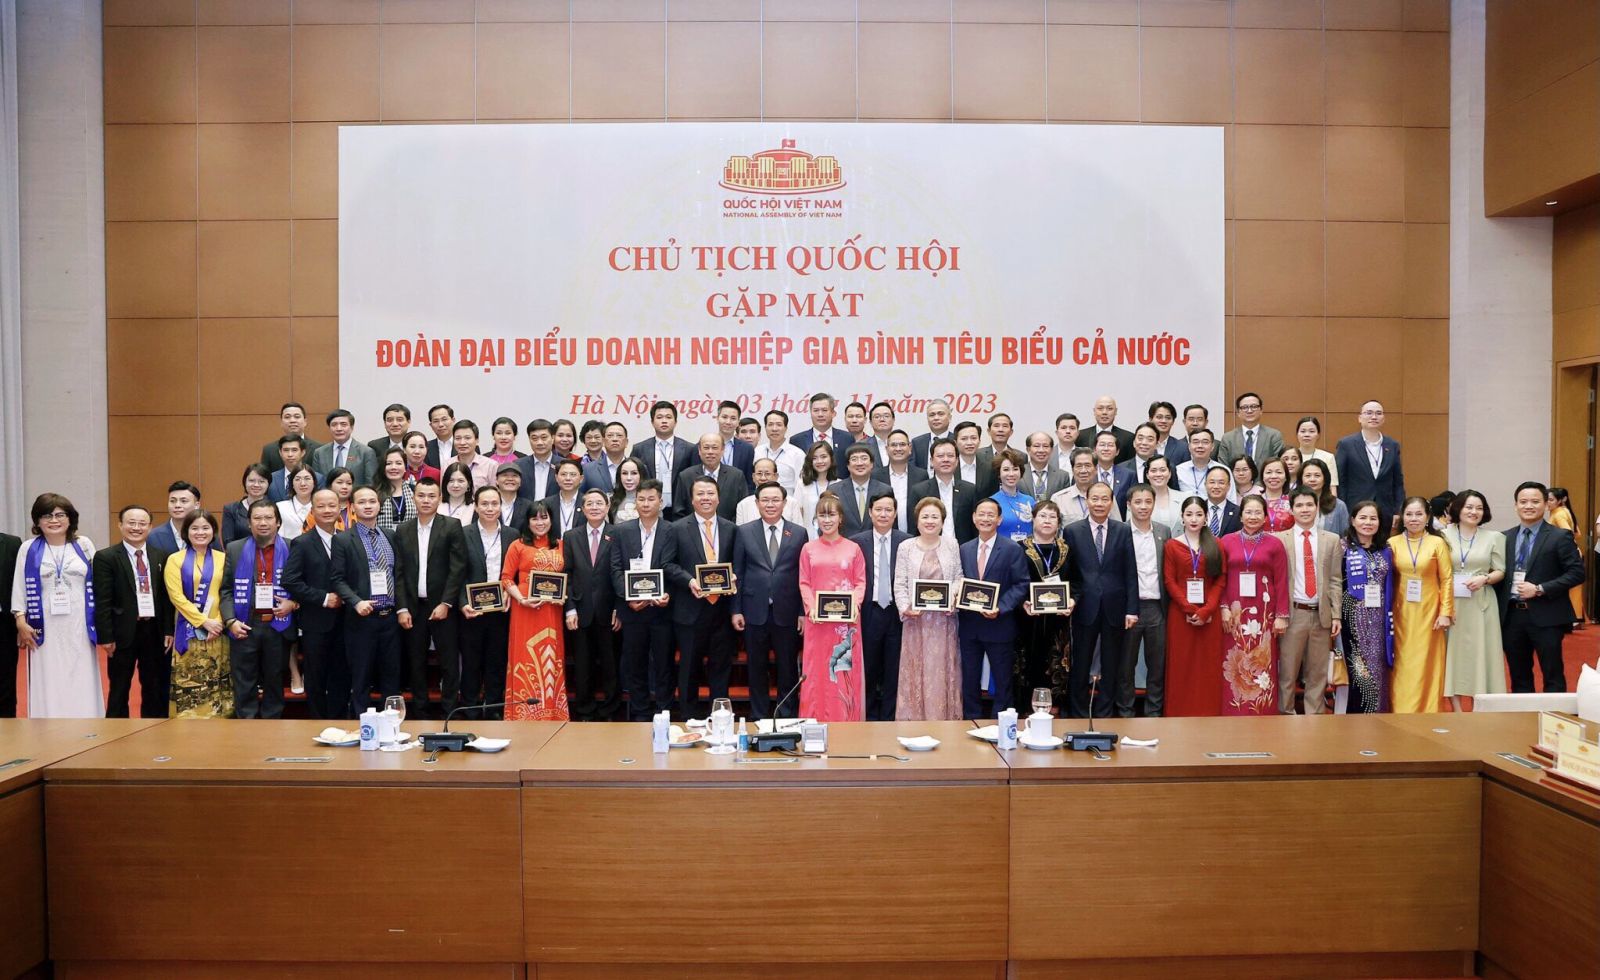 Doanh nhân Nguyễn Hoàng Sang được vinh danh doanh nghiệp gia đình tiêu biểu